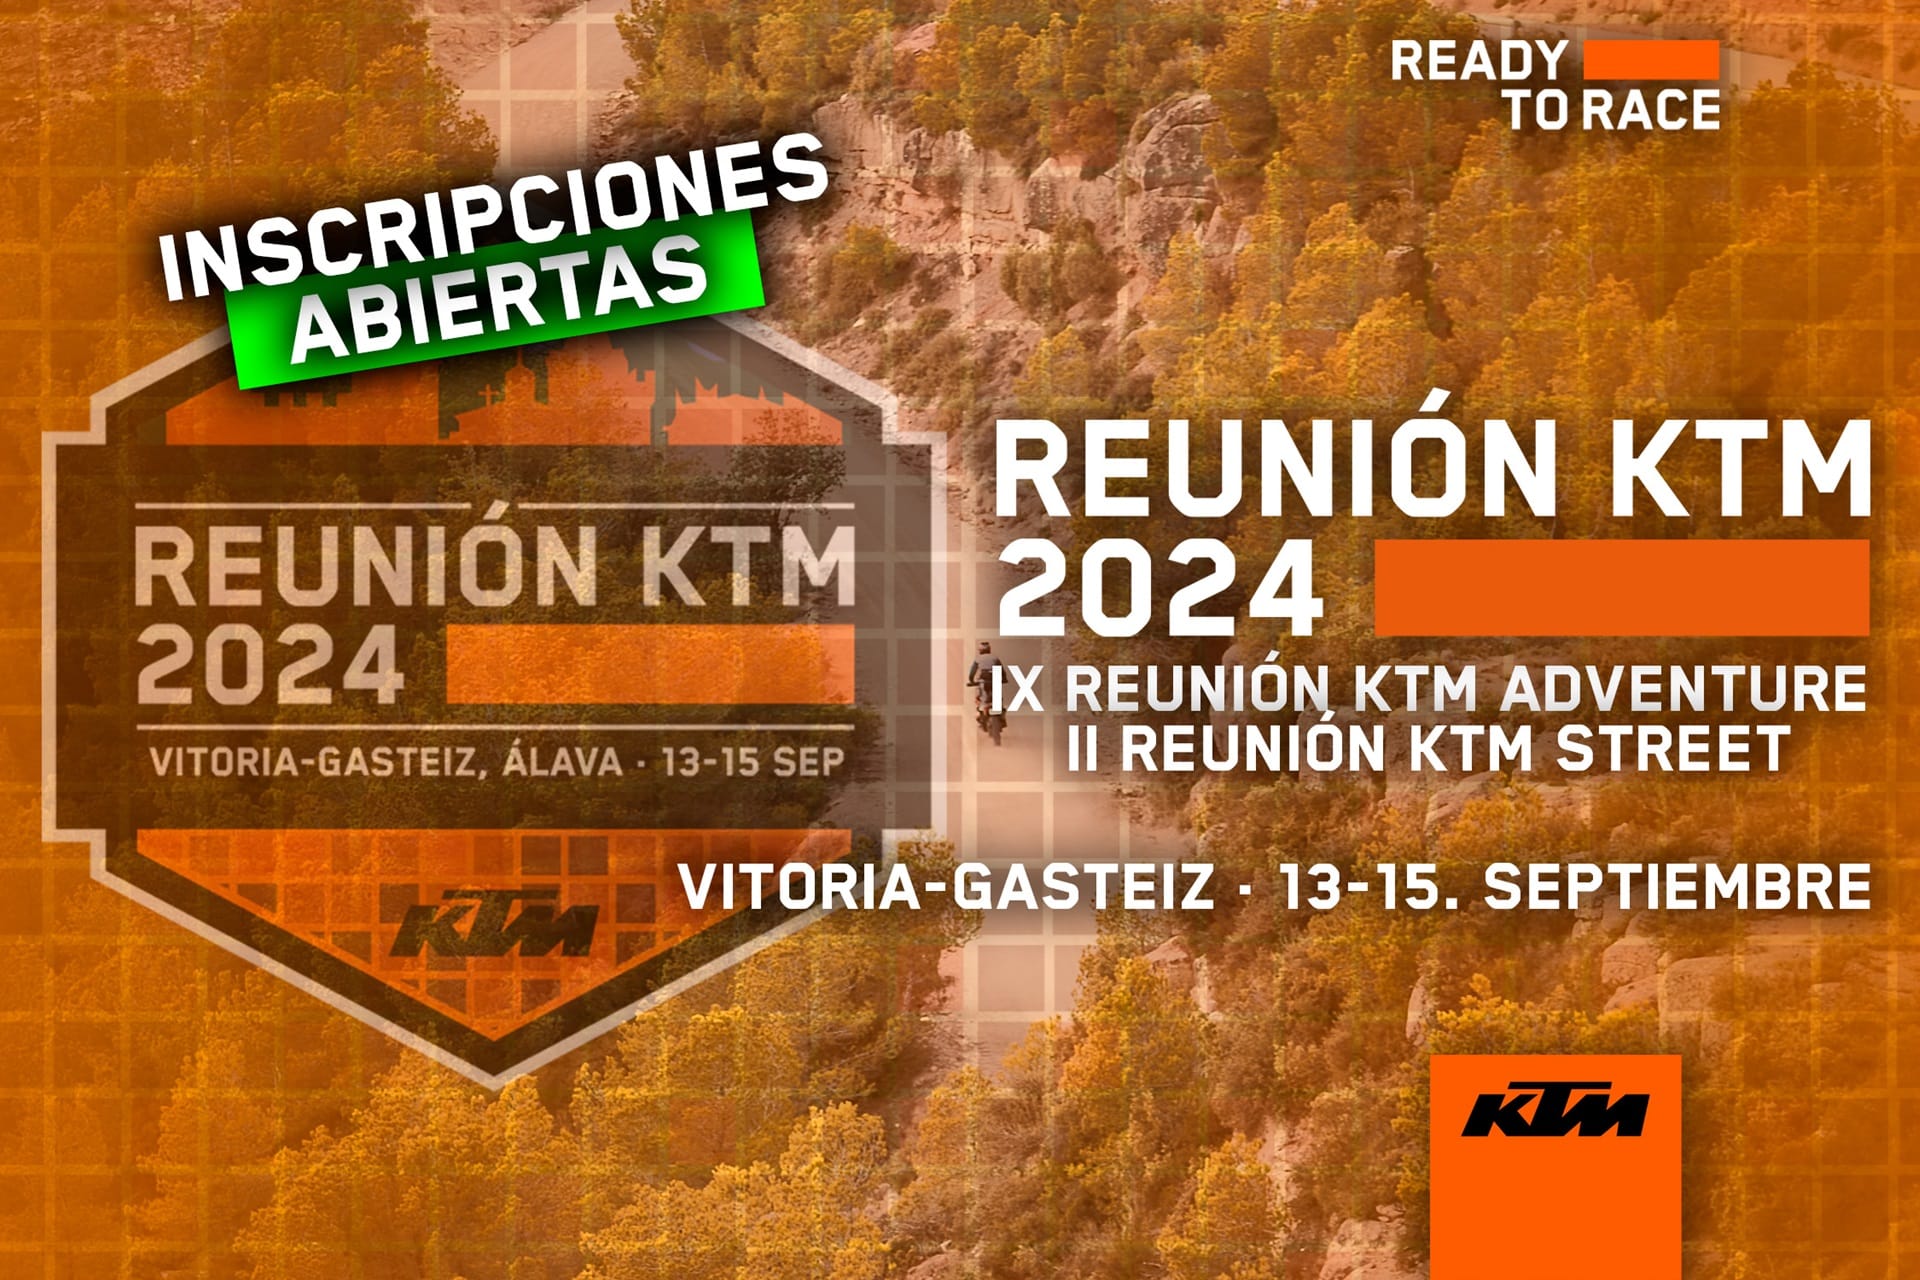 La Reunión KTM 2024 anuncia la apertura del plazo de inscripciones